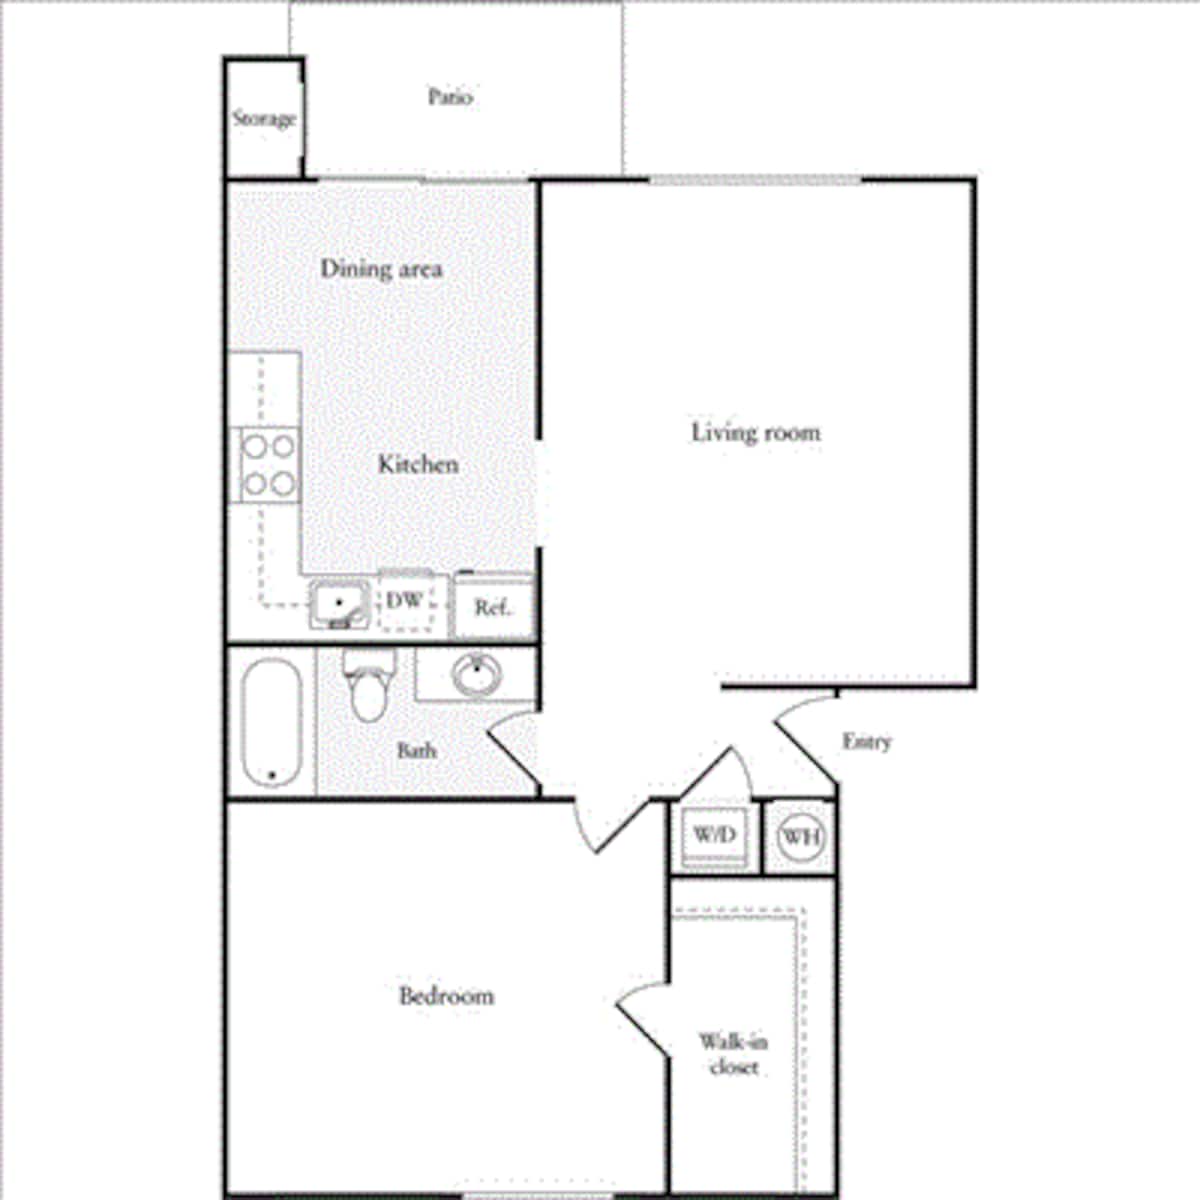 Floorplan diagram for 1 Bedroom A, showing 1 bedroom